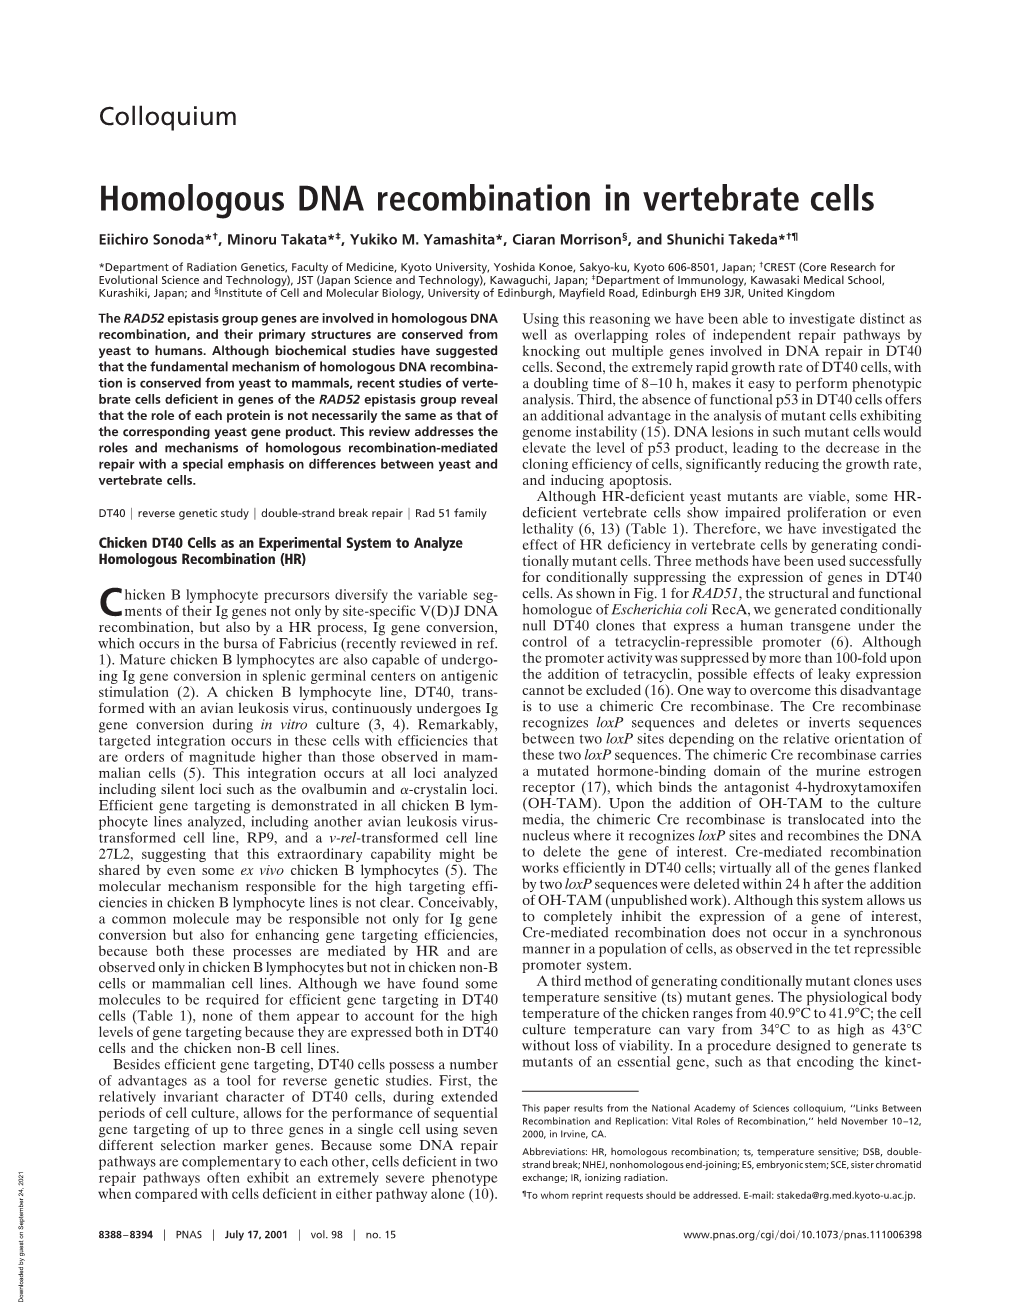 Homologous DNA Recombination in Vertebrate Cells